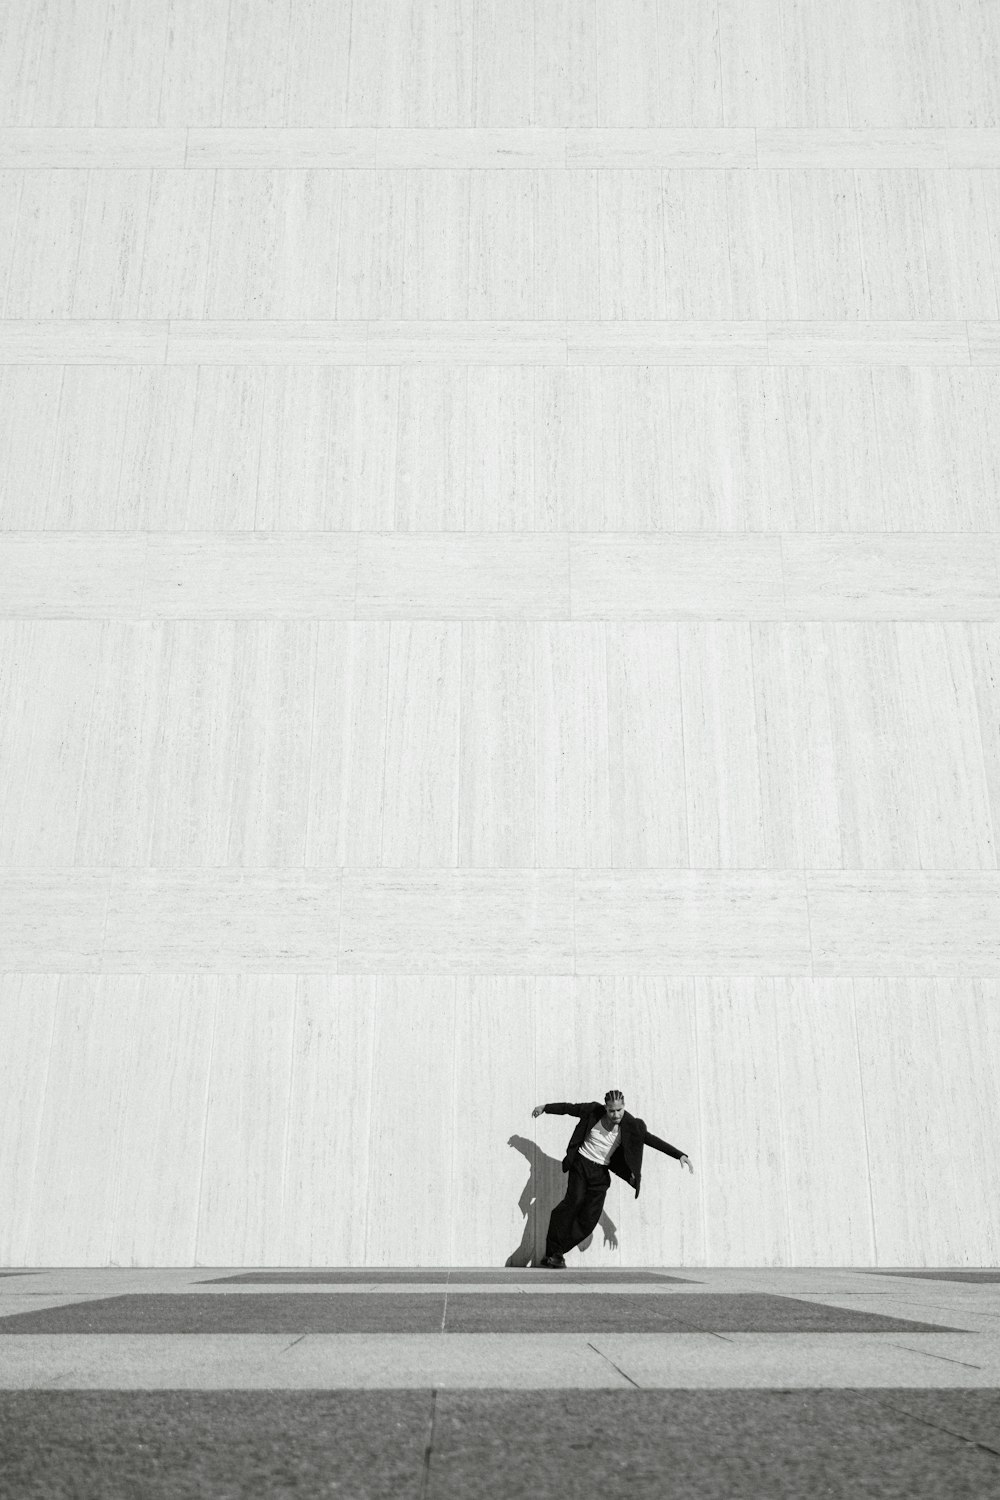 セメントの床を横切ってスケートボードに乗る男